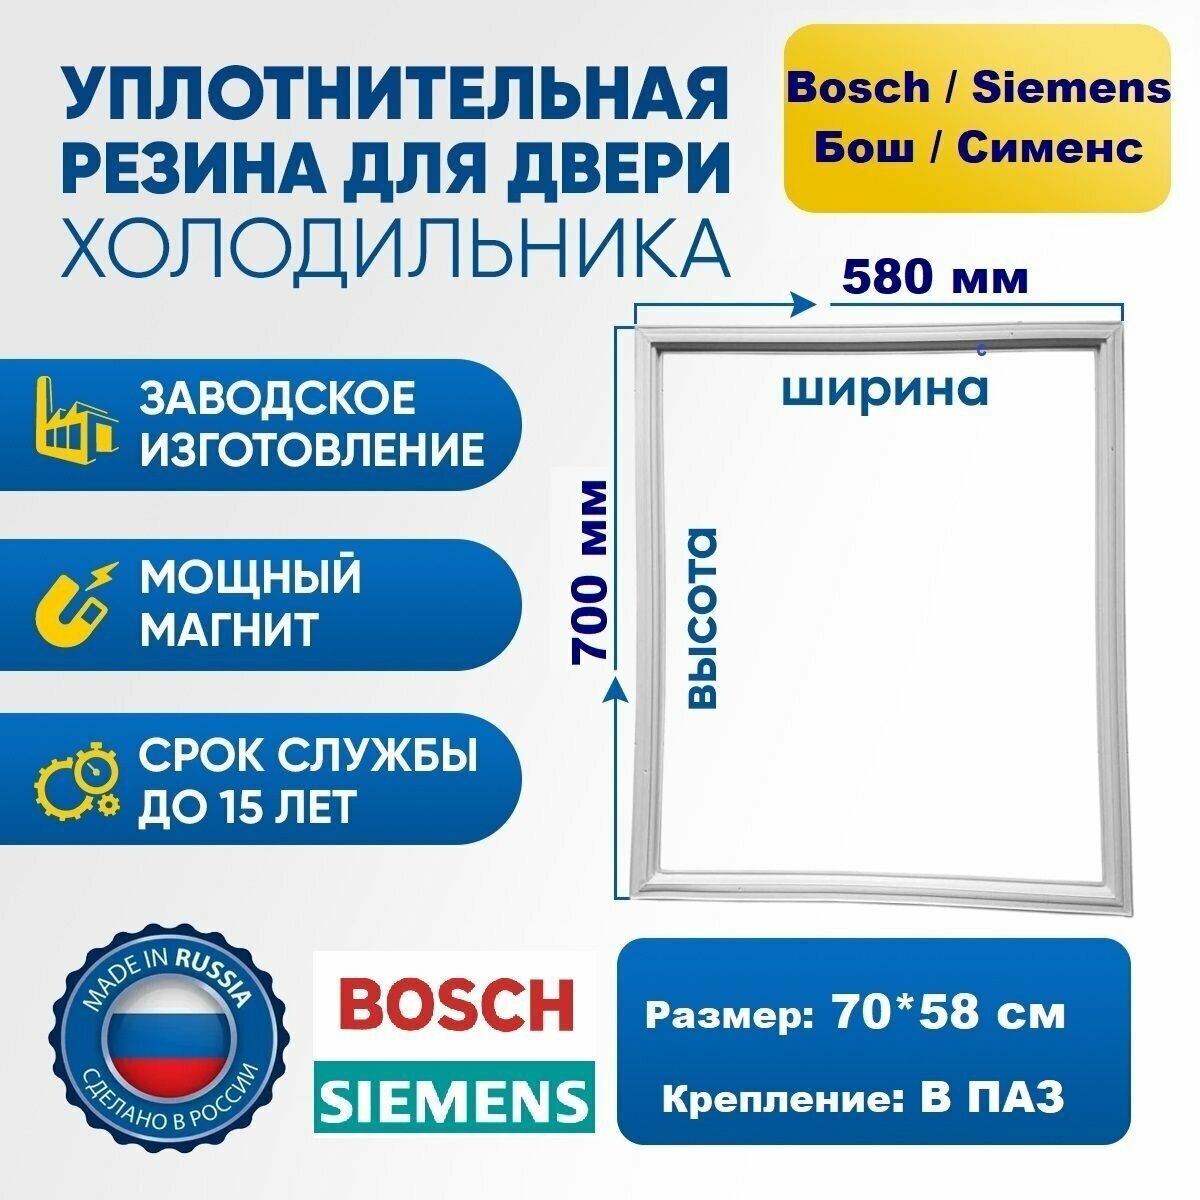 Уплотнитель для холодильника Bosch Siemens 70*58 см. Резинка на дверь холодильника Бош Сименс 700*580 мм. на морозильную камеру